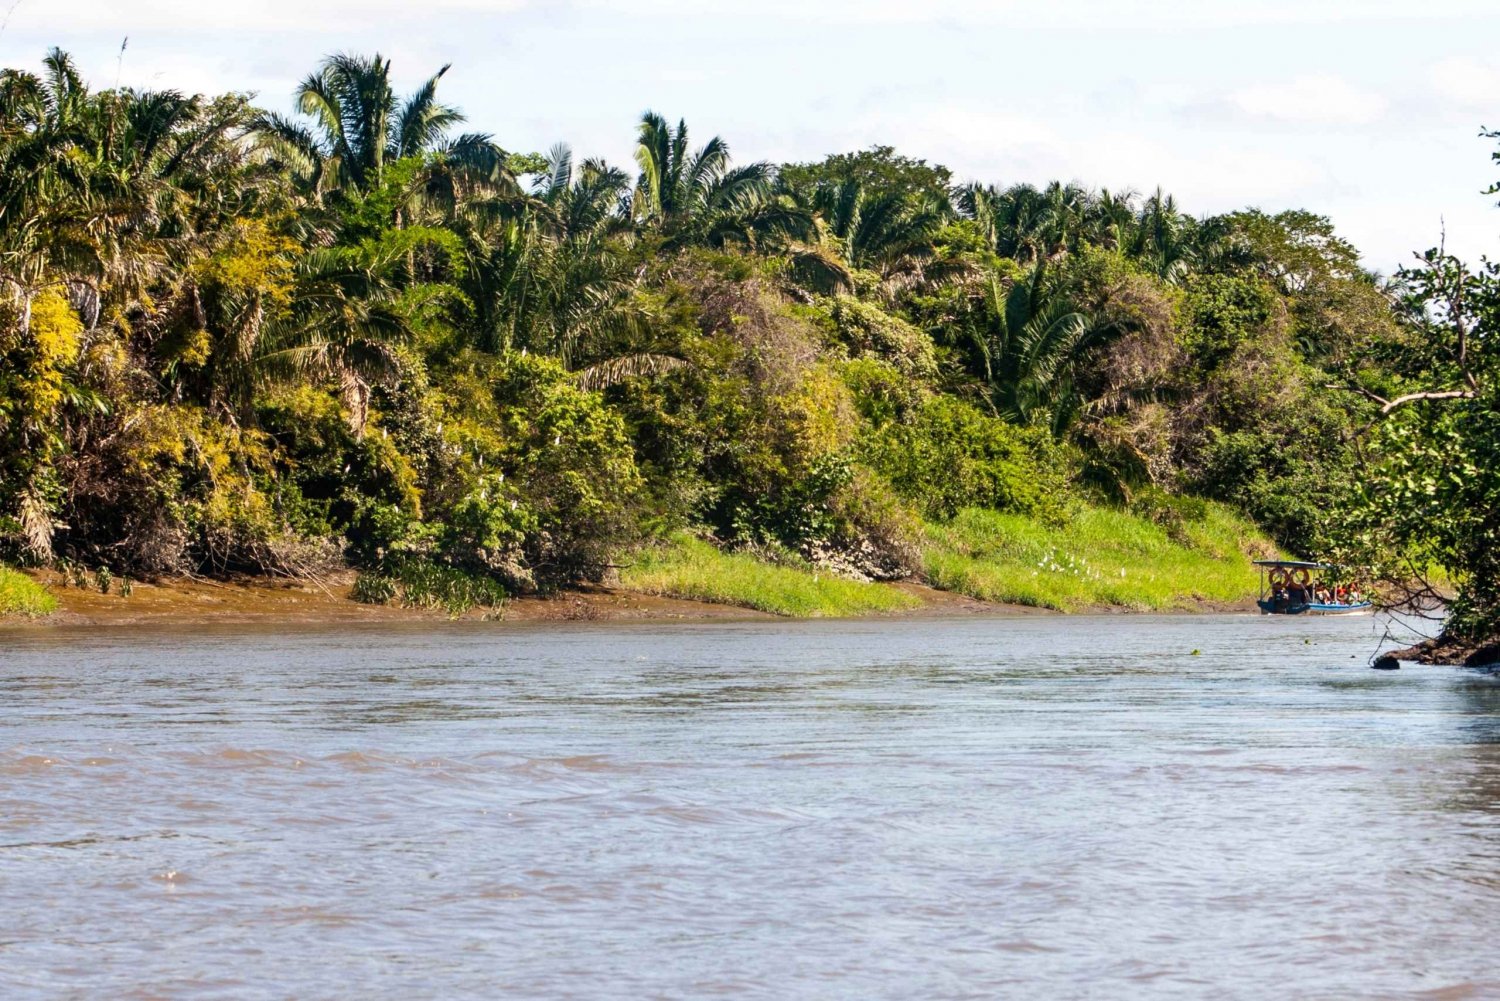 Från Guanacaste: Flodkryssning i Tempisque med fruktfat